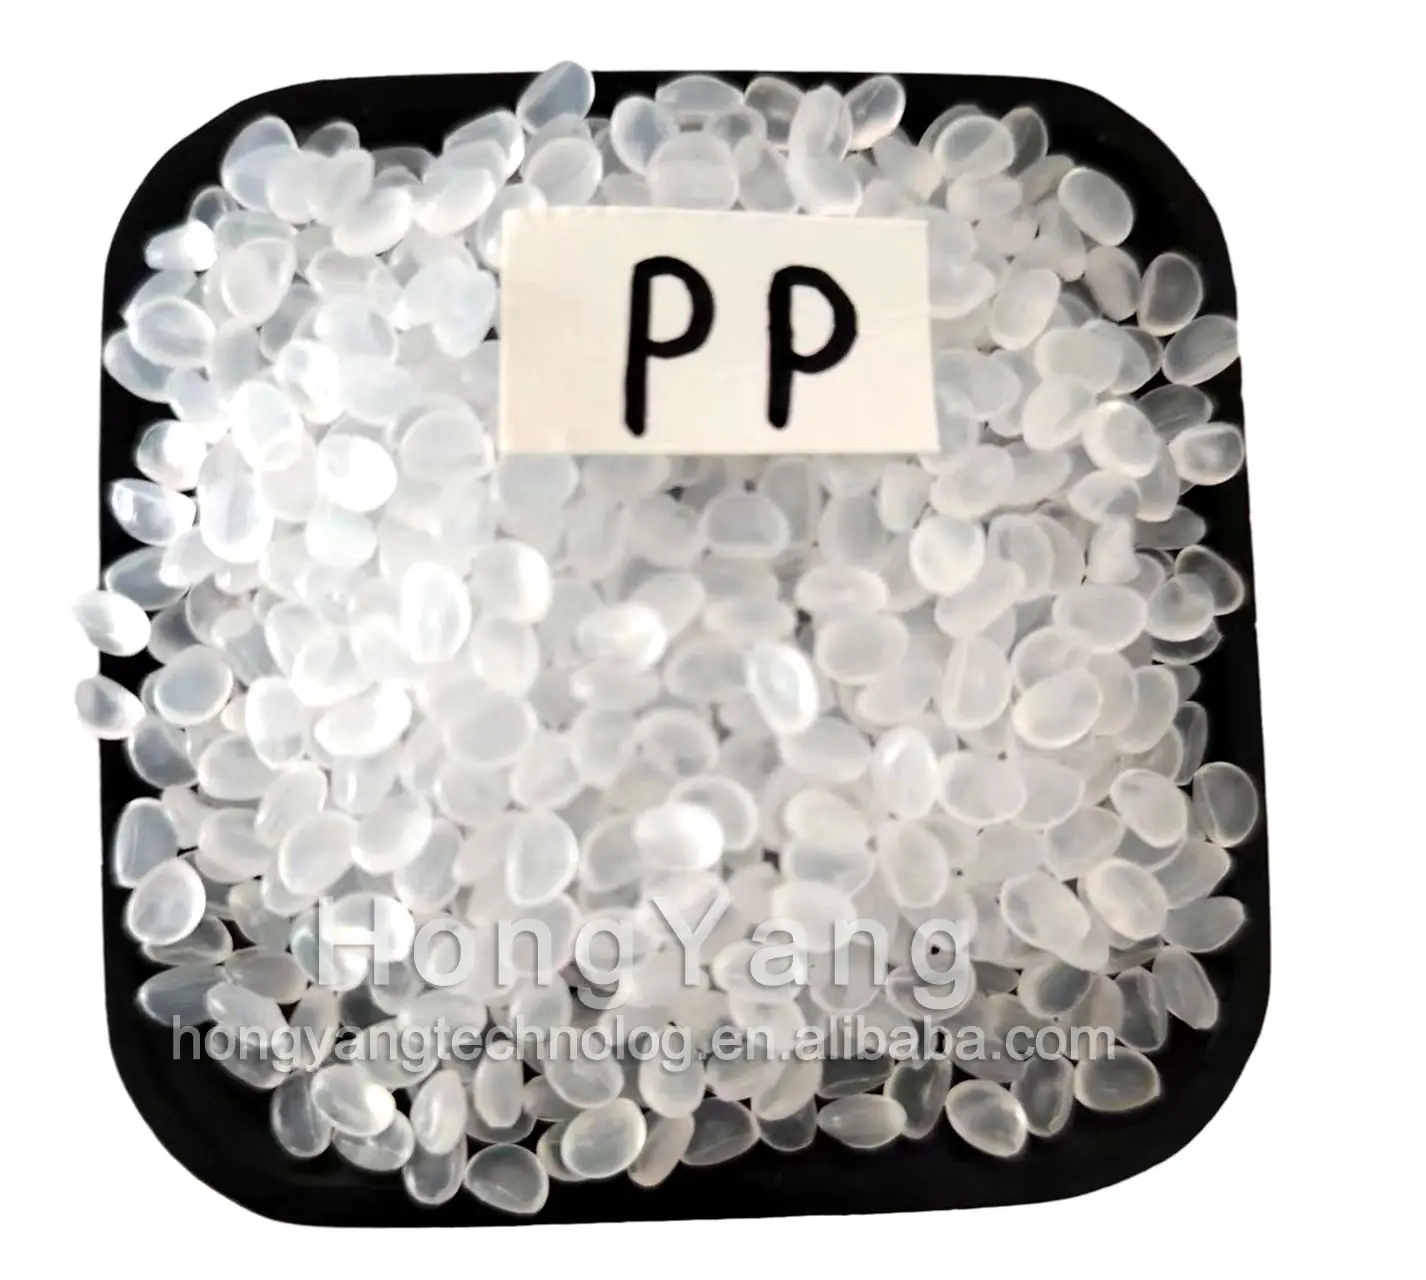 เม็ดพลาสติก PP โพรพิลีนรีไซเคิลสีธรรมชาติ